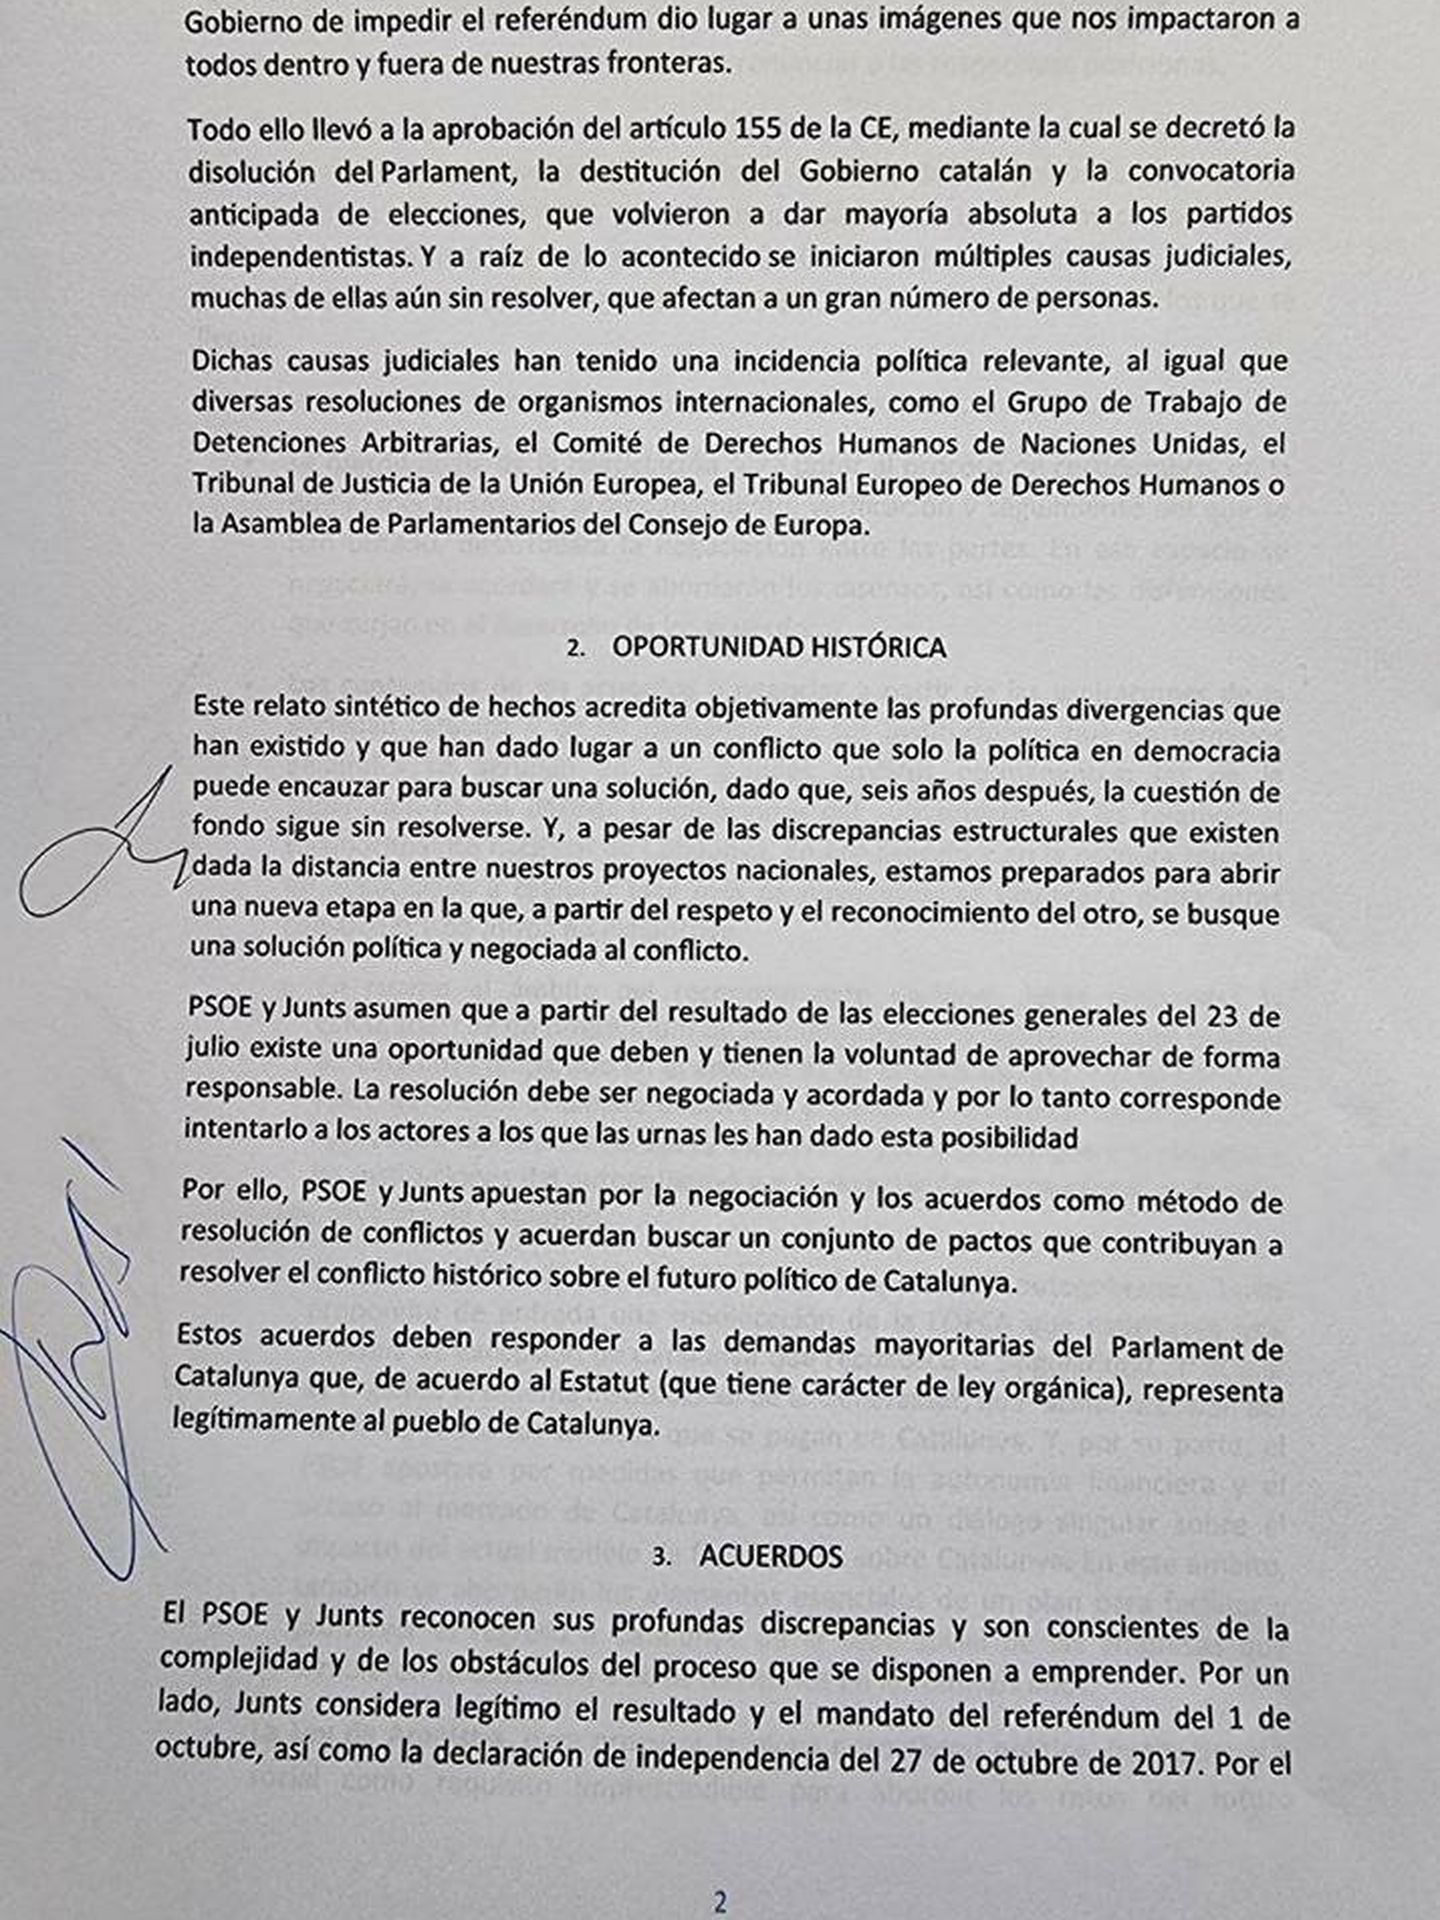 Acuerdo entre PSOE y Junts